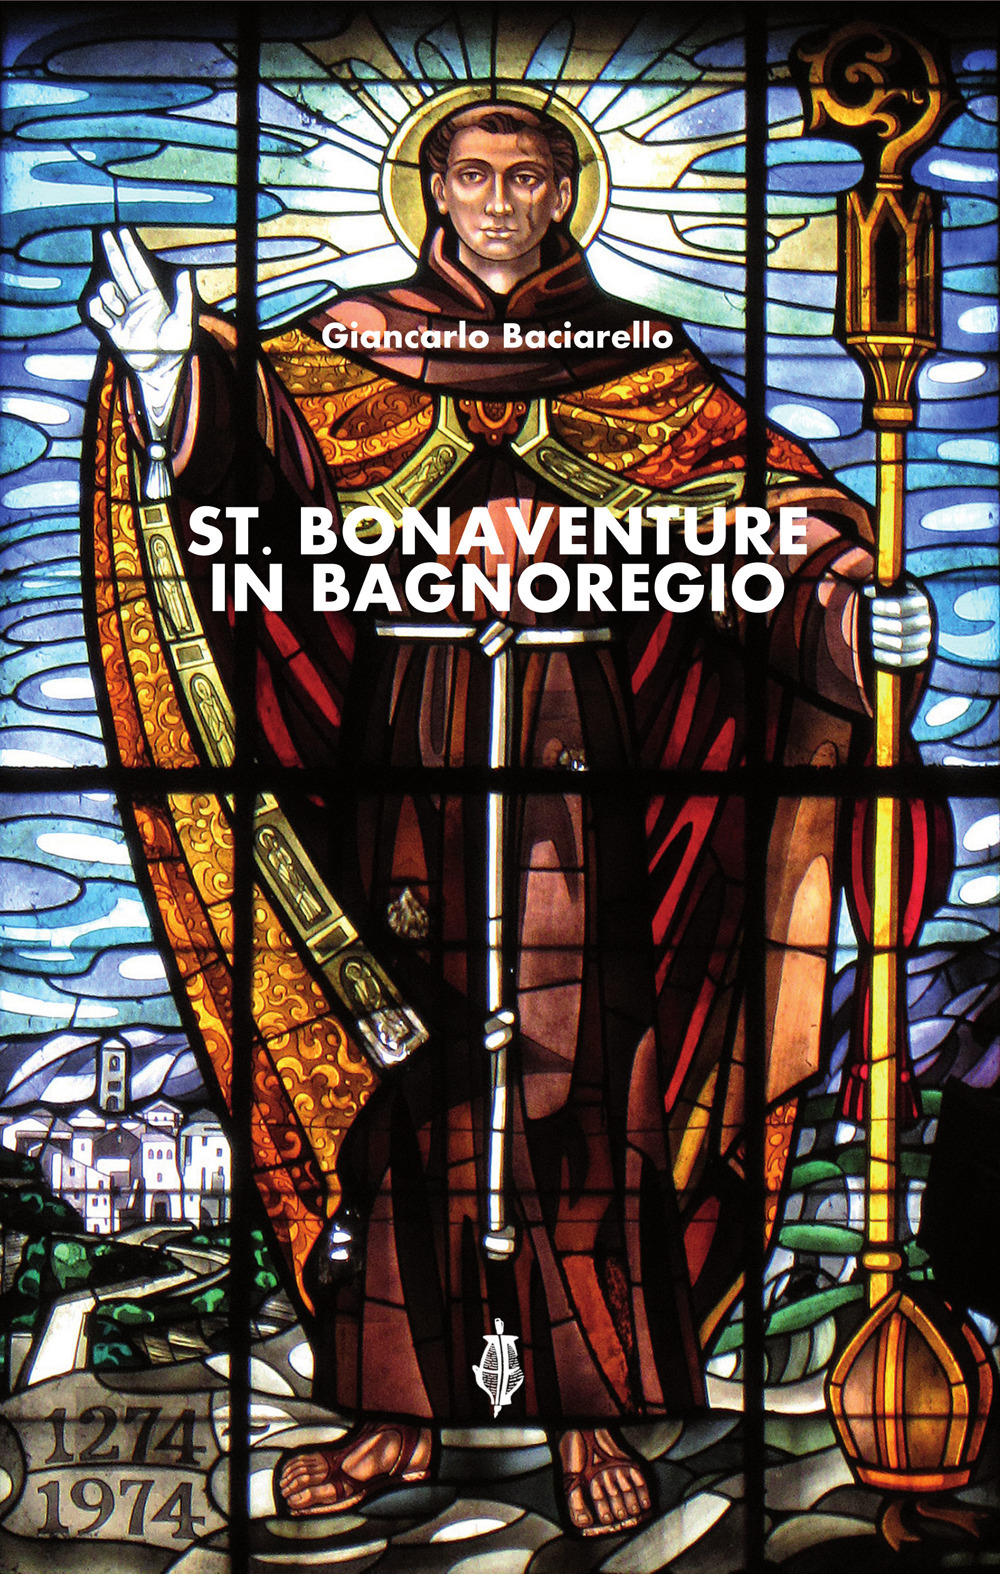 St. Bonaventure in Bagnoregio